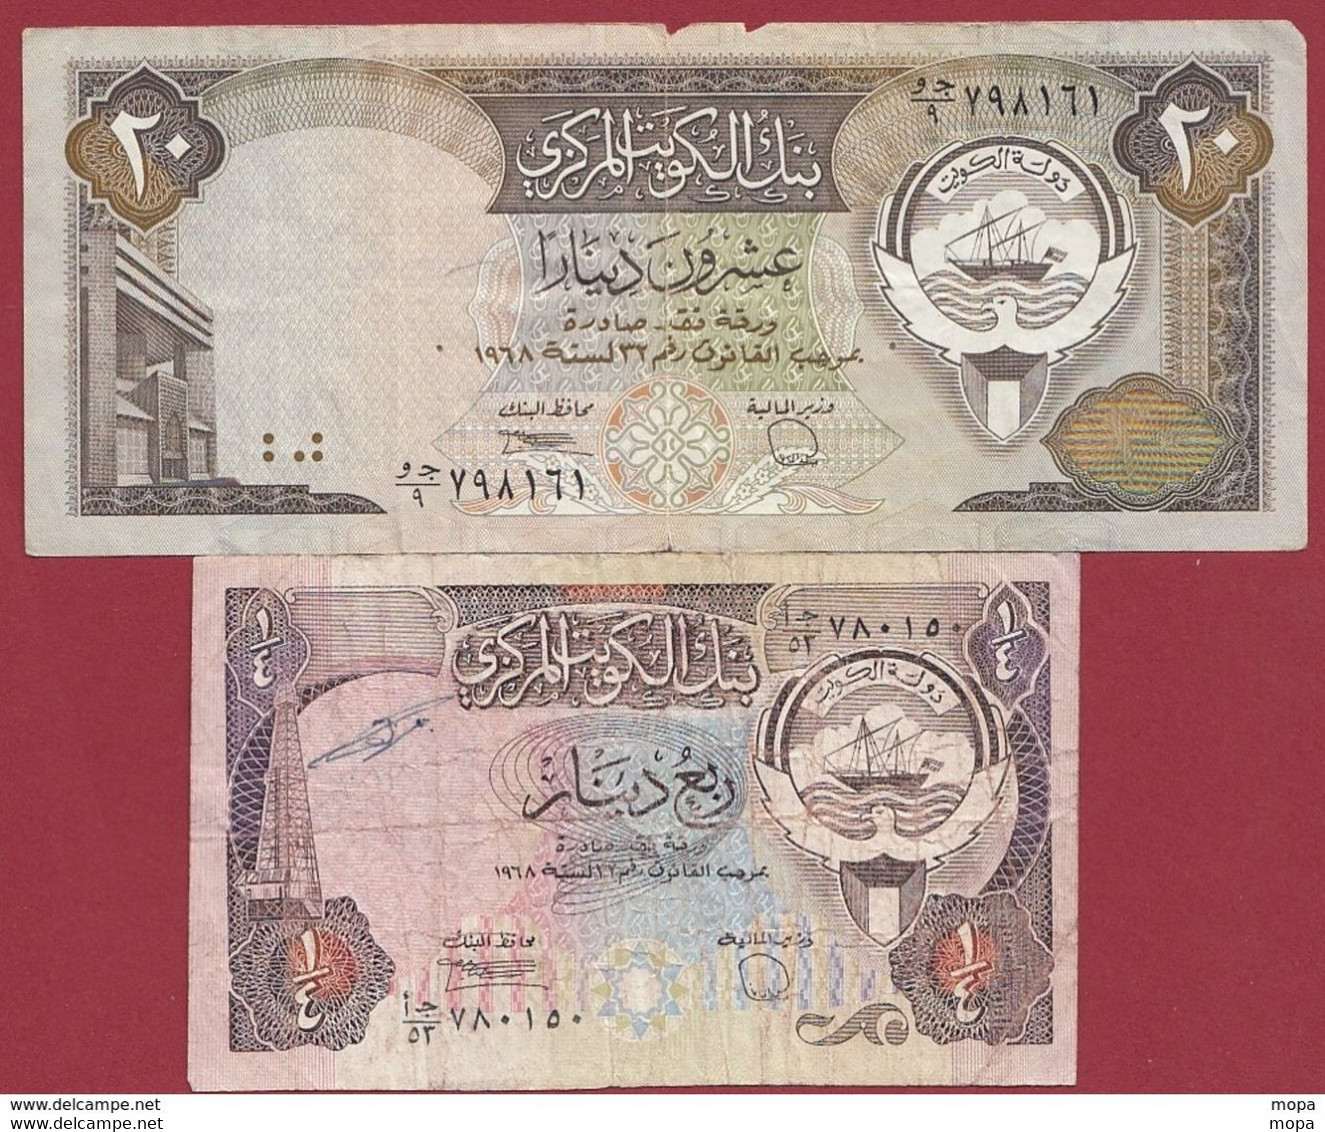 Koweit 2 Billets Dans L 'état (20 Dinars 1986/91--(Sign 6) FORTE COTE EN UNC) (87) - Kuwait